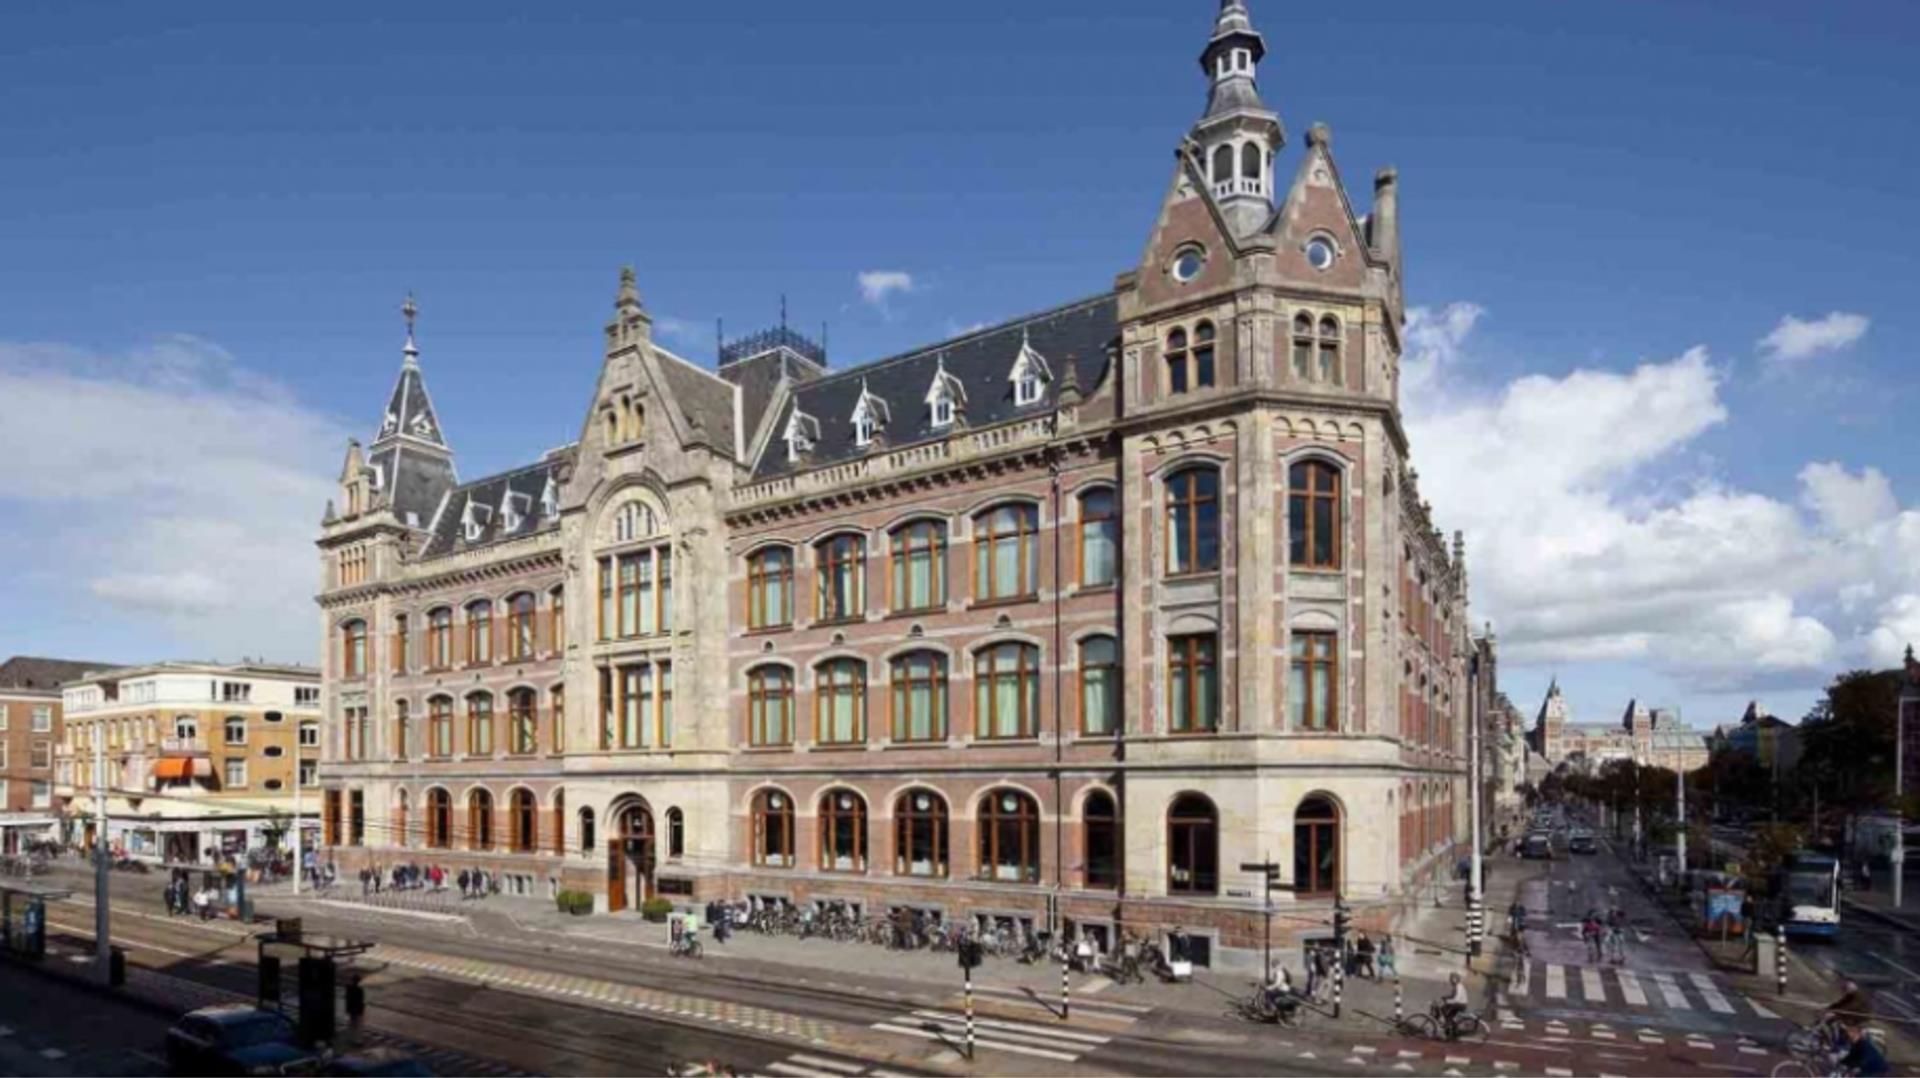 Conservatorium Hotel in Amsterdam, NL